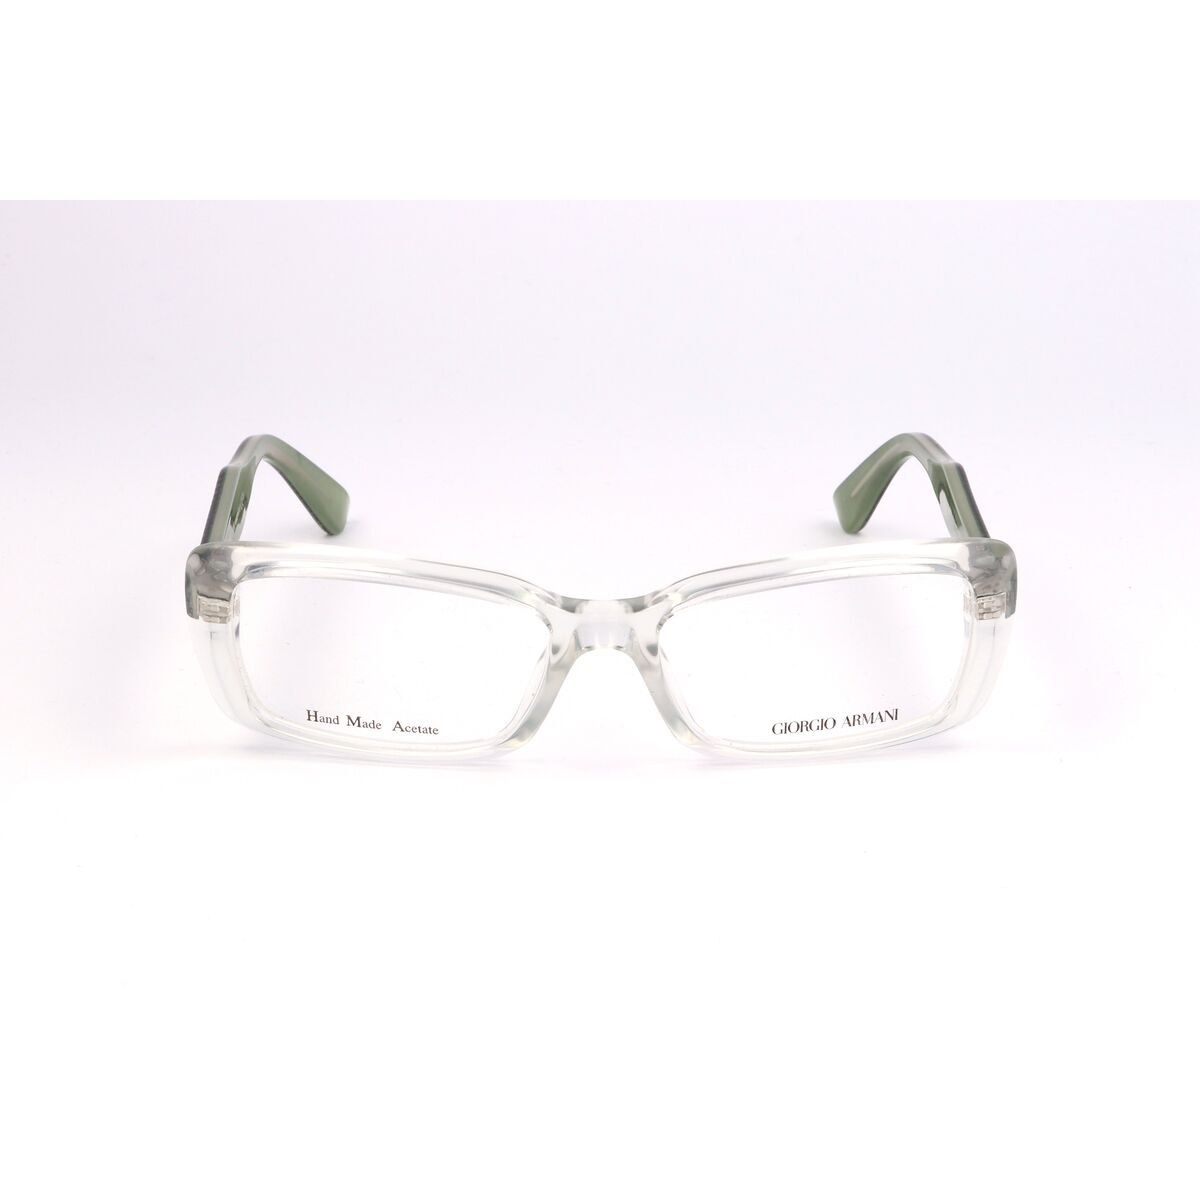 Armani Brillenfassung GA-943-LU9 Durchsichtig Brillengestell Brillengestell